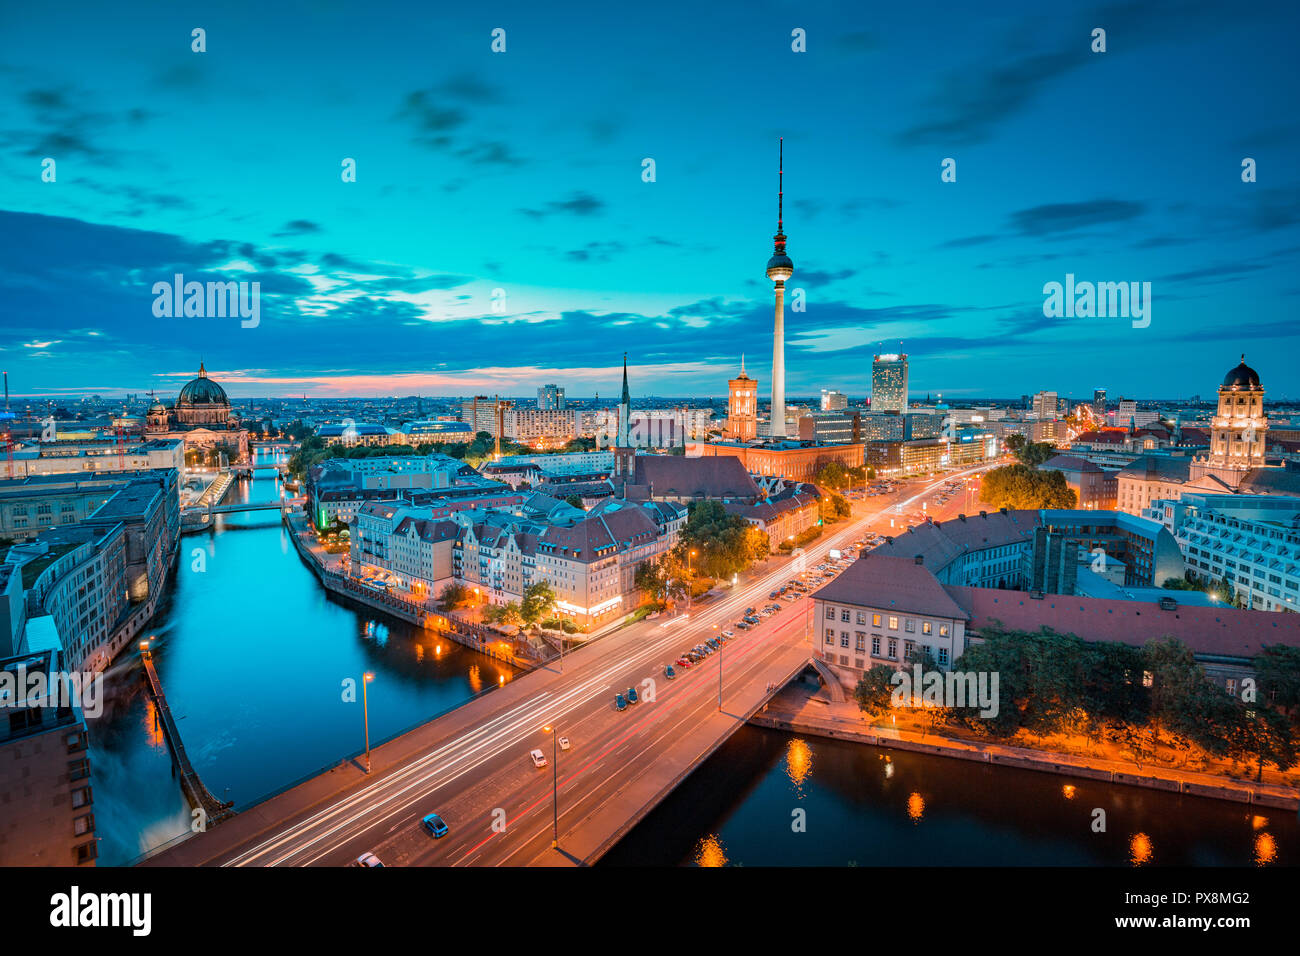 Klassische Ansicht der Berliner Skyline mit berühmten Fernsehturm und Spree in wunderschönen goldenen Abendlicht bei Sonnenuntergang, zentrale Berlin Mitte, Deutschland Stockfoto